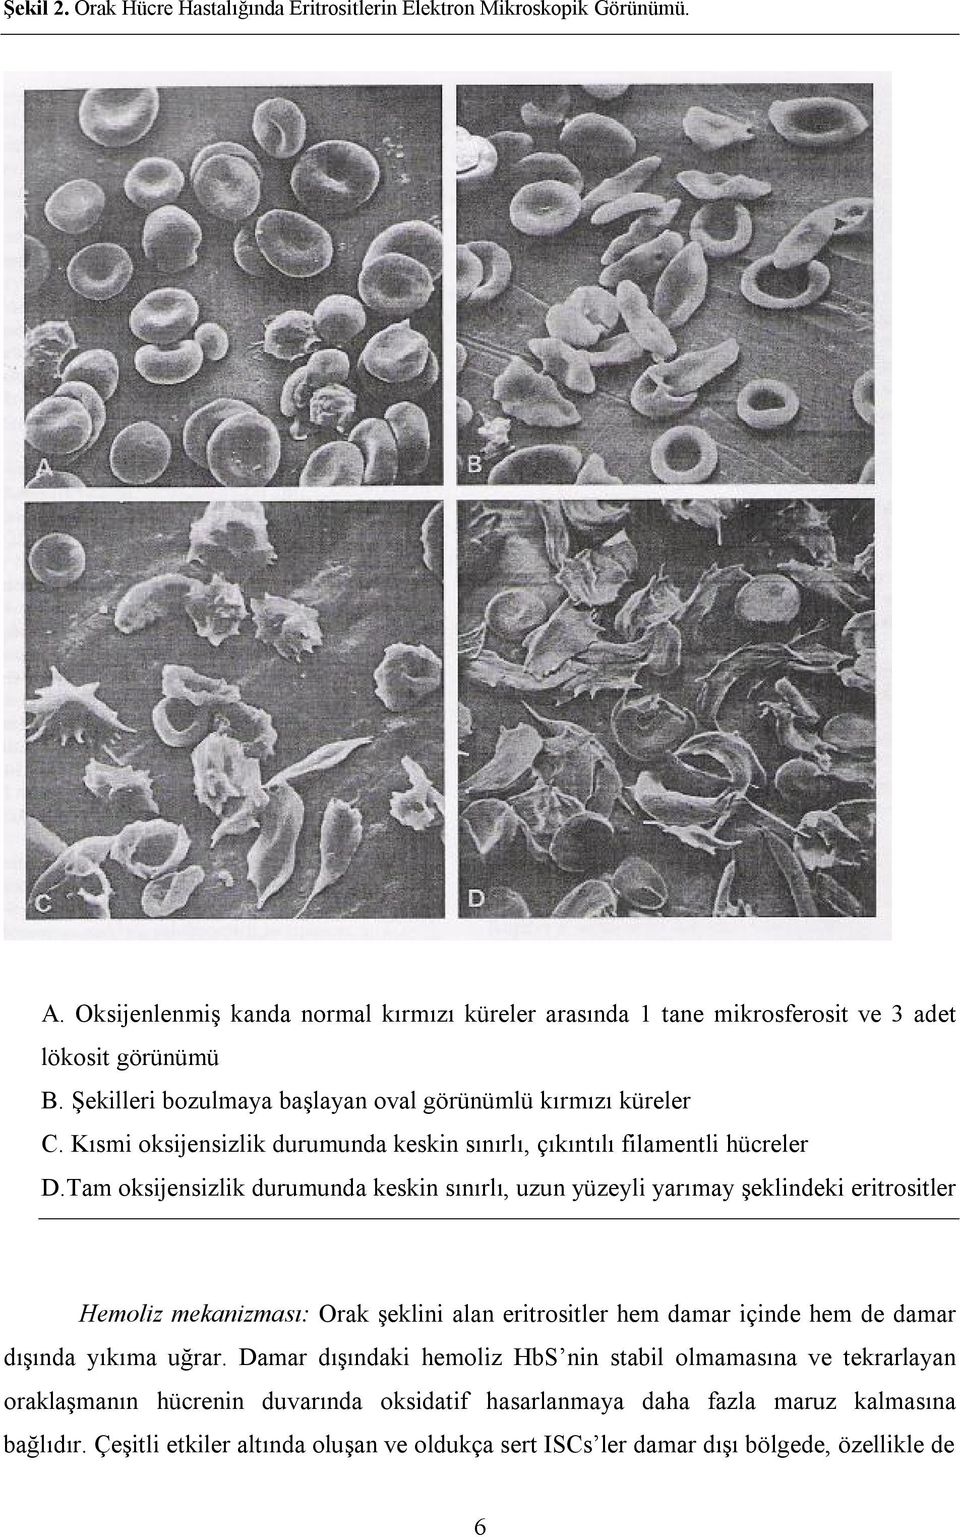 Tam oksijensizlik durumunda keskin sınırlı, uzun yüzeyli yarımay şeklindeki eritrositler Hemoliz mekanizması: Orak şeklini alan eritrositler hem damar içinde hem de damar dışında yıkıma uğrar.